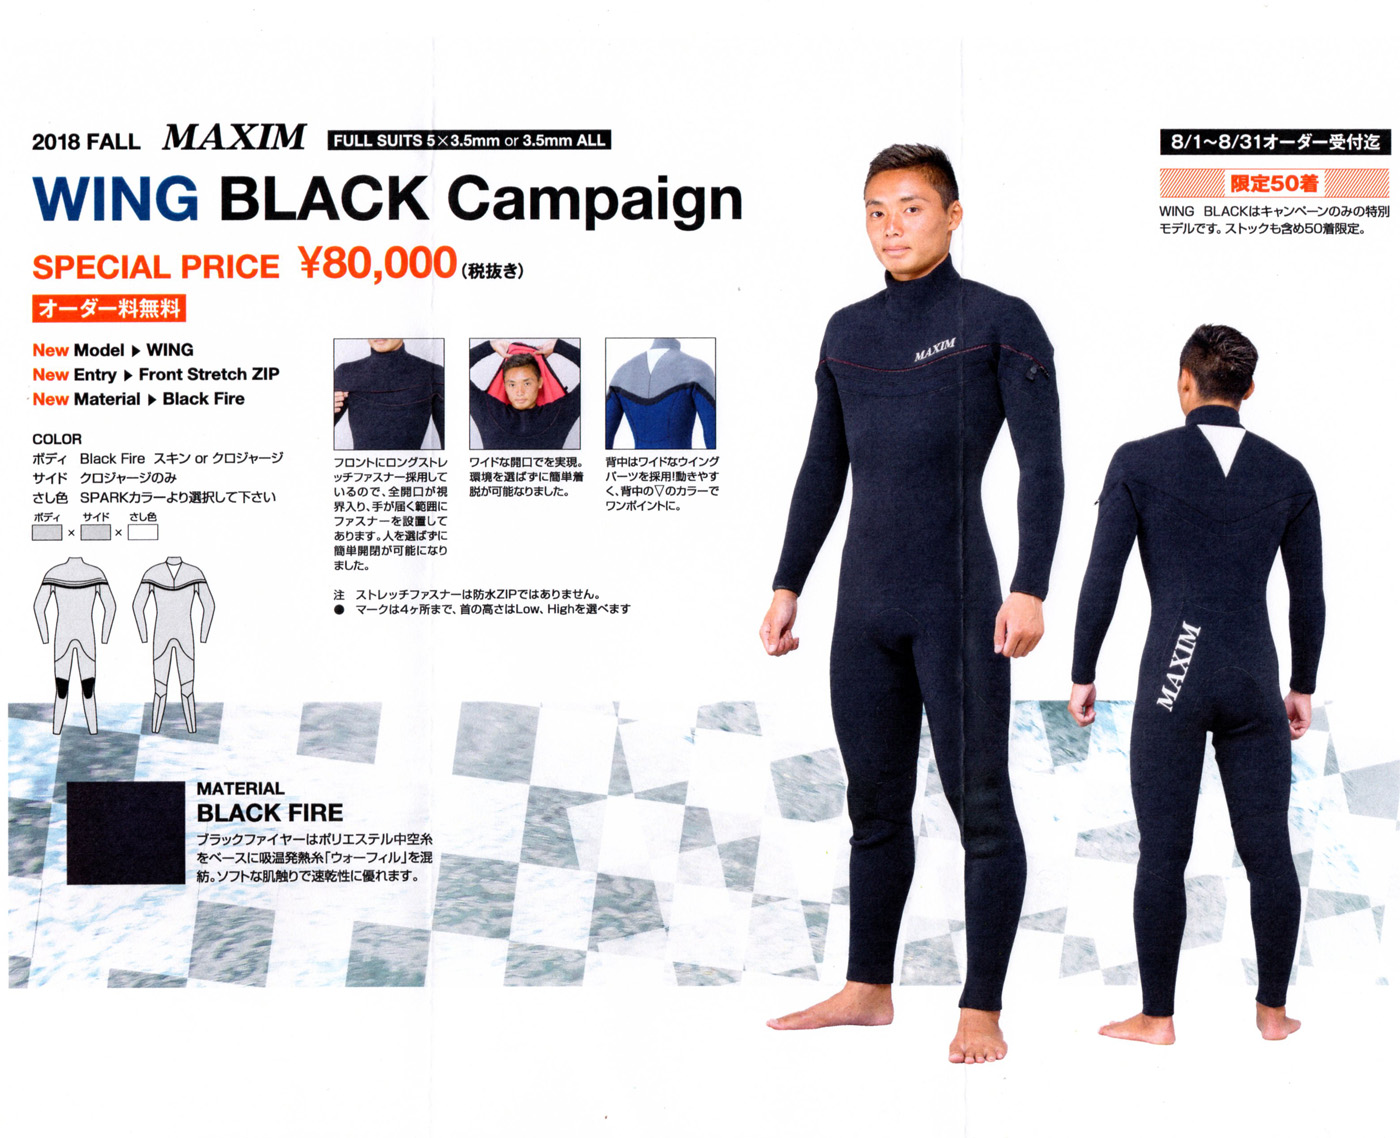 MAXIMウエットスーツ数量限定WING BLACK キャンペーンのお知らせ